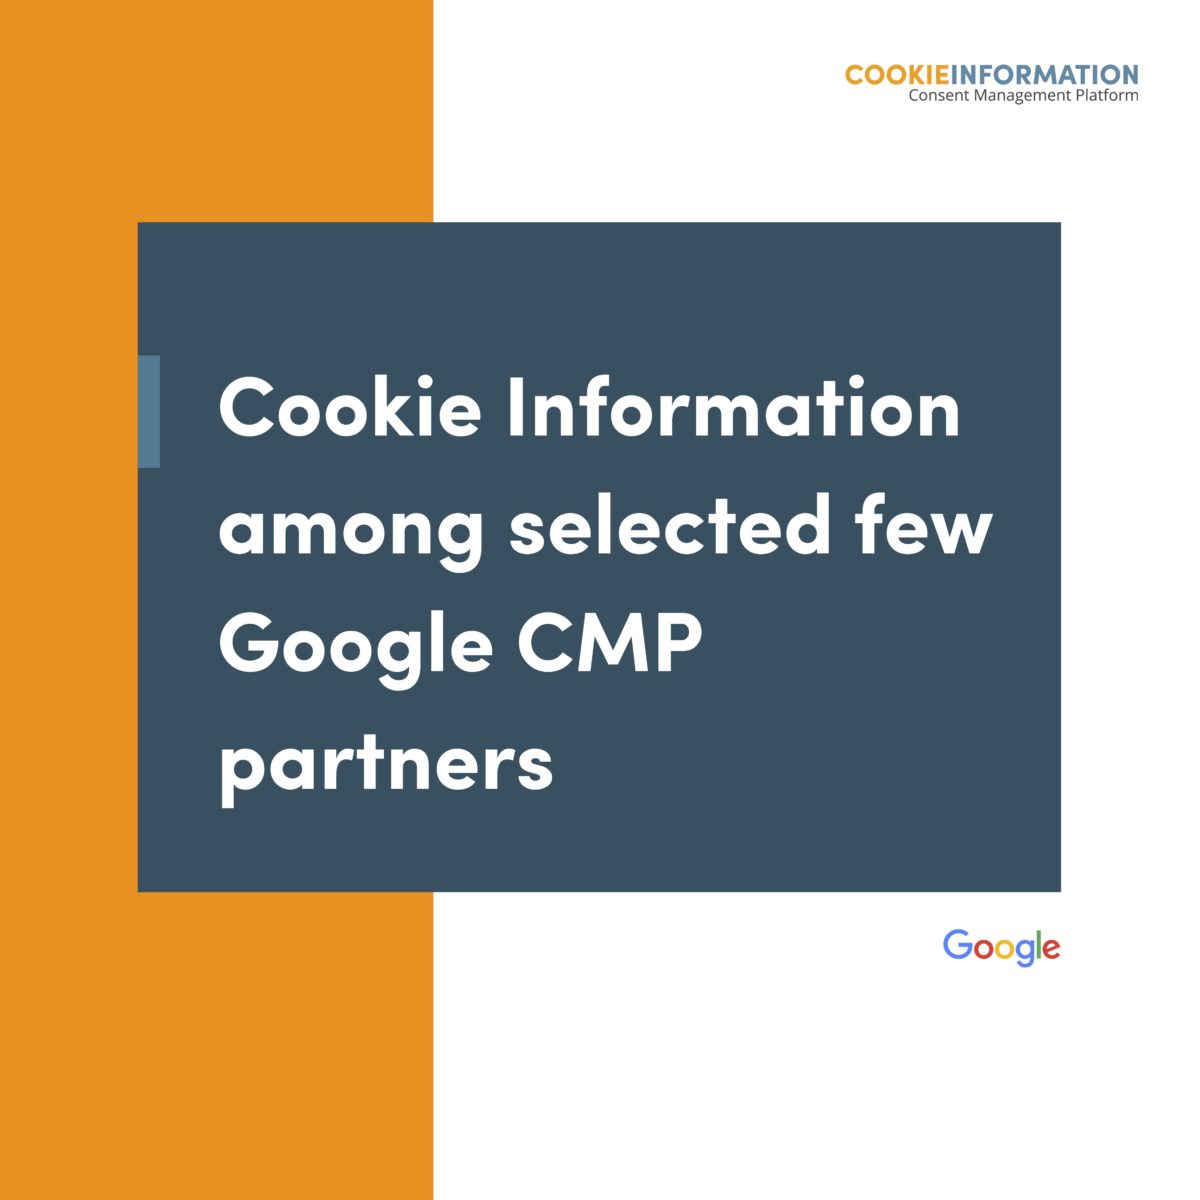 Cookie Information gehört zu wenigen ausgewählten Google Consent Management Platform Partnern